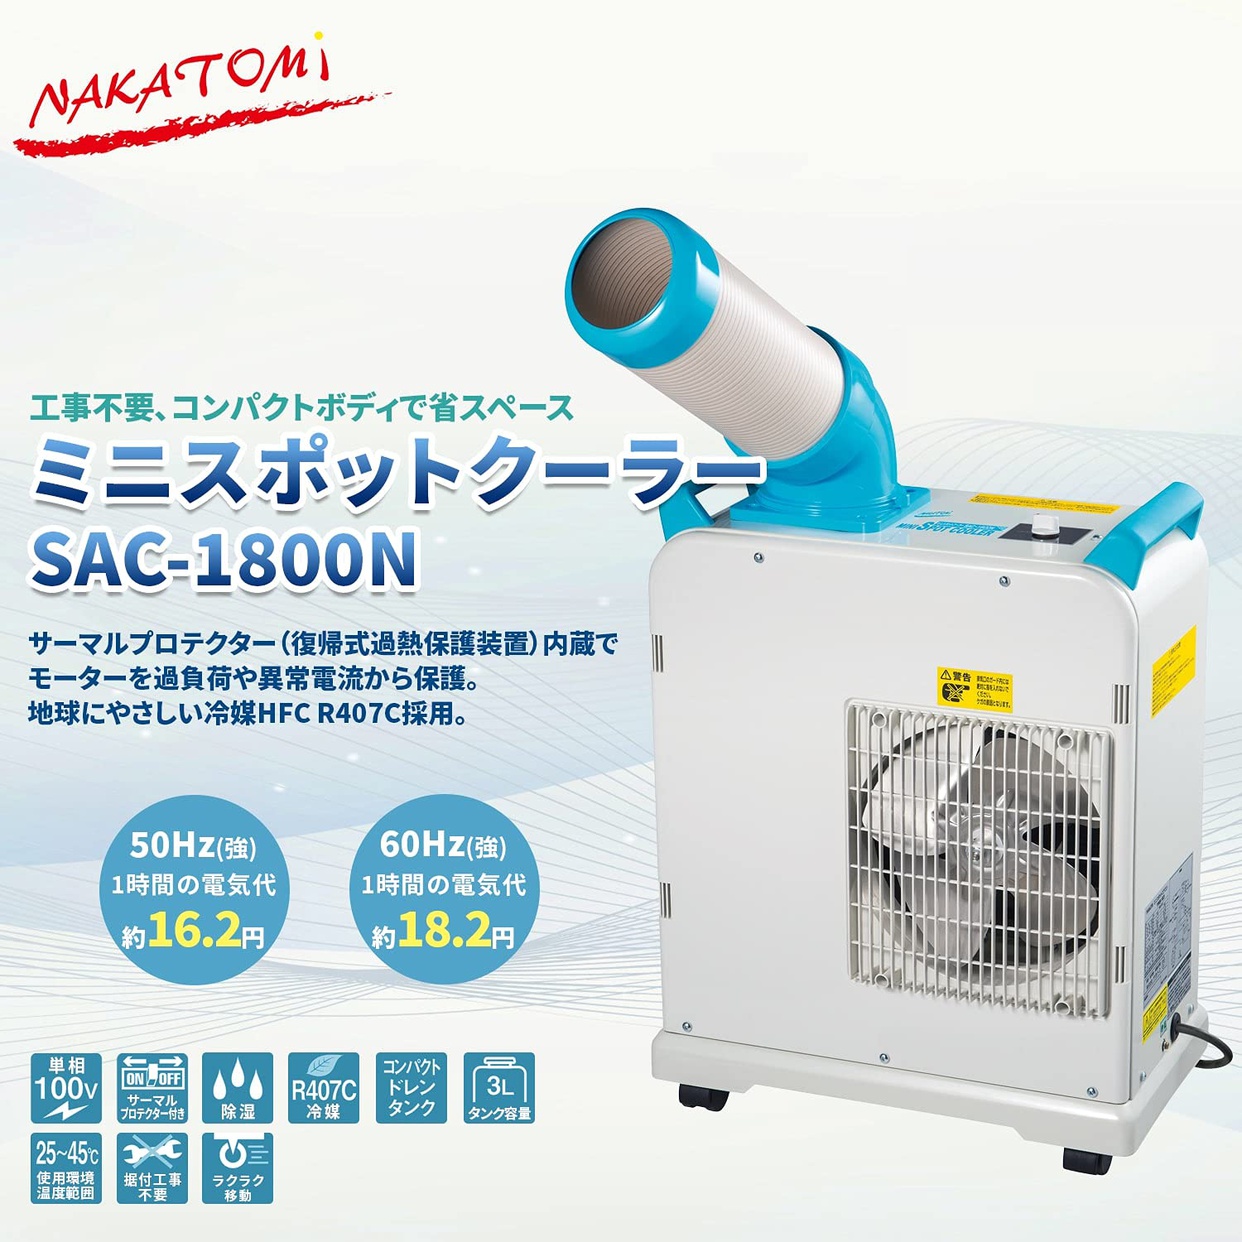 【送料無料】NAKATOMI/ナカトミ ミニスポットクーラー SAC-1800N